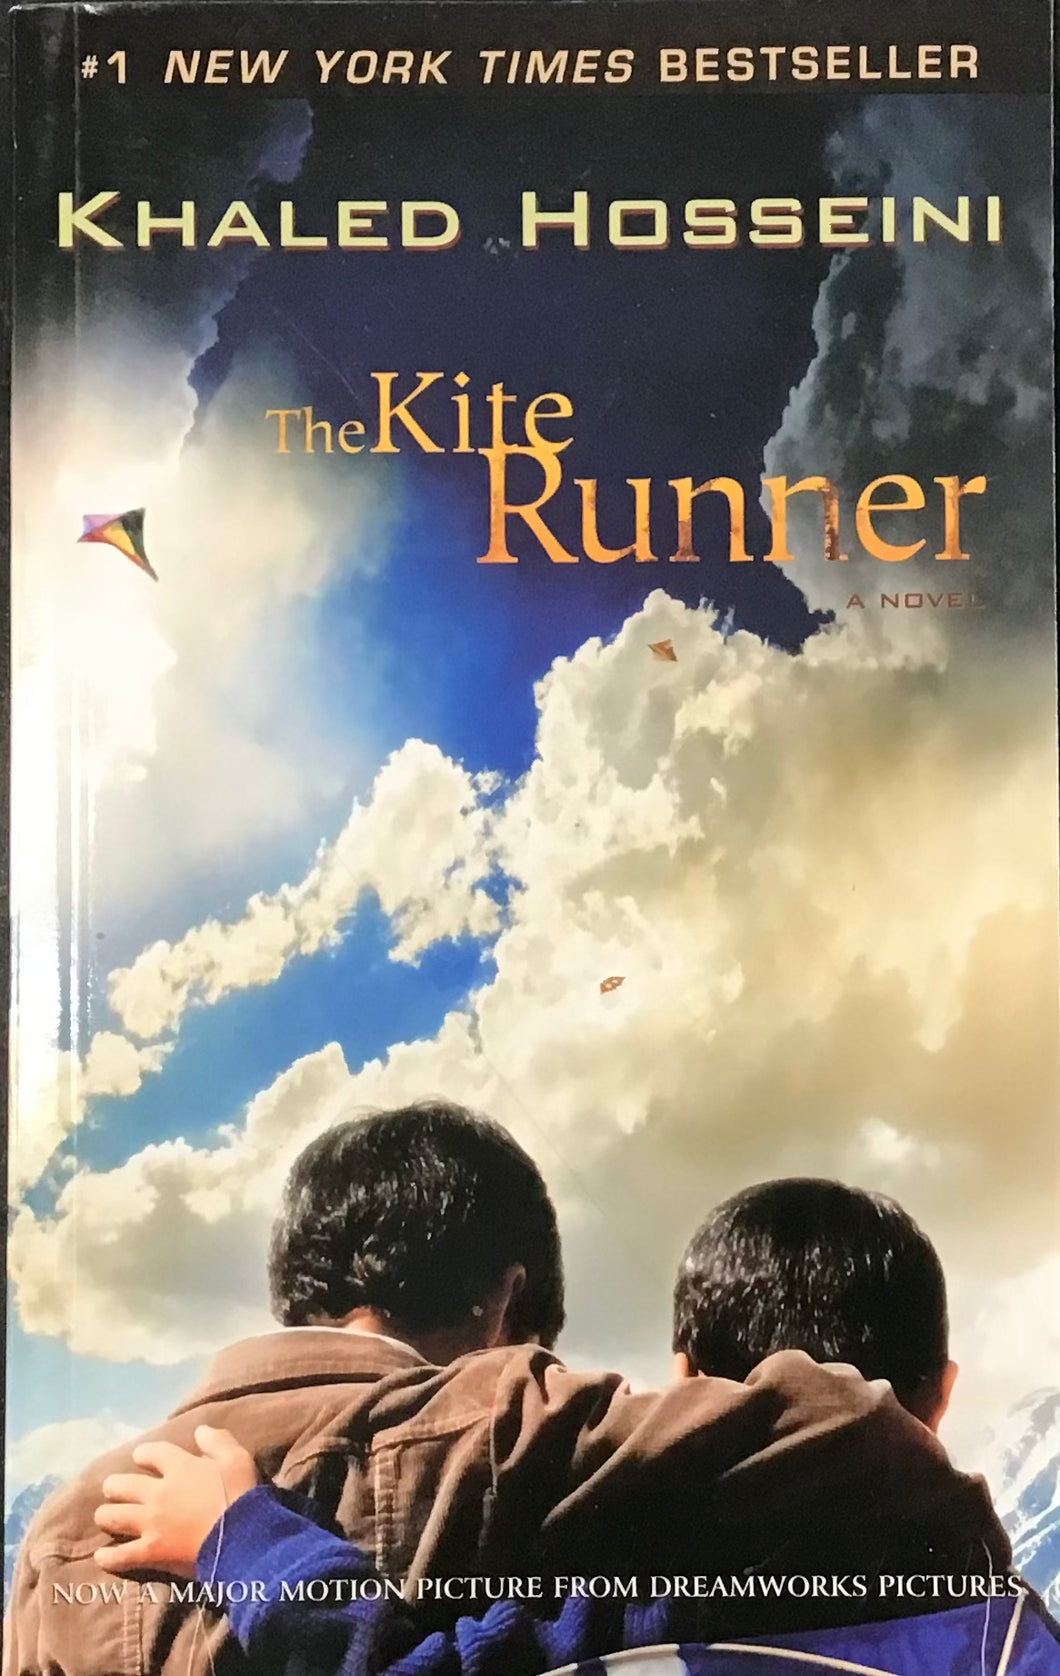 The Kite runner, Khaled Hosseini